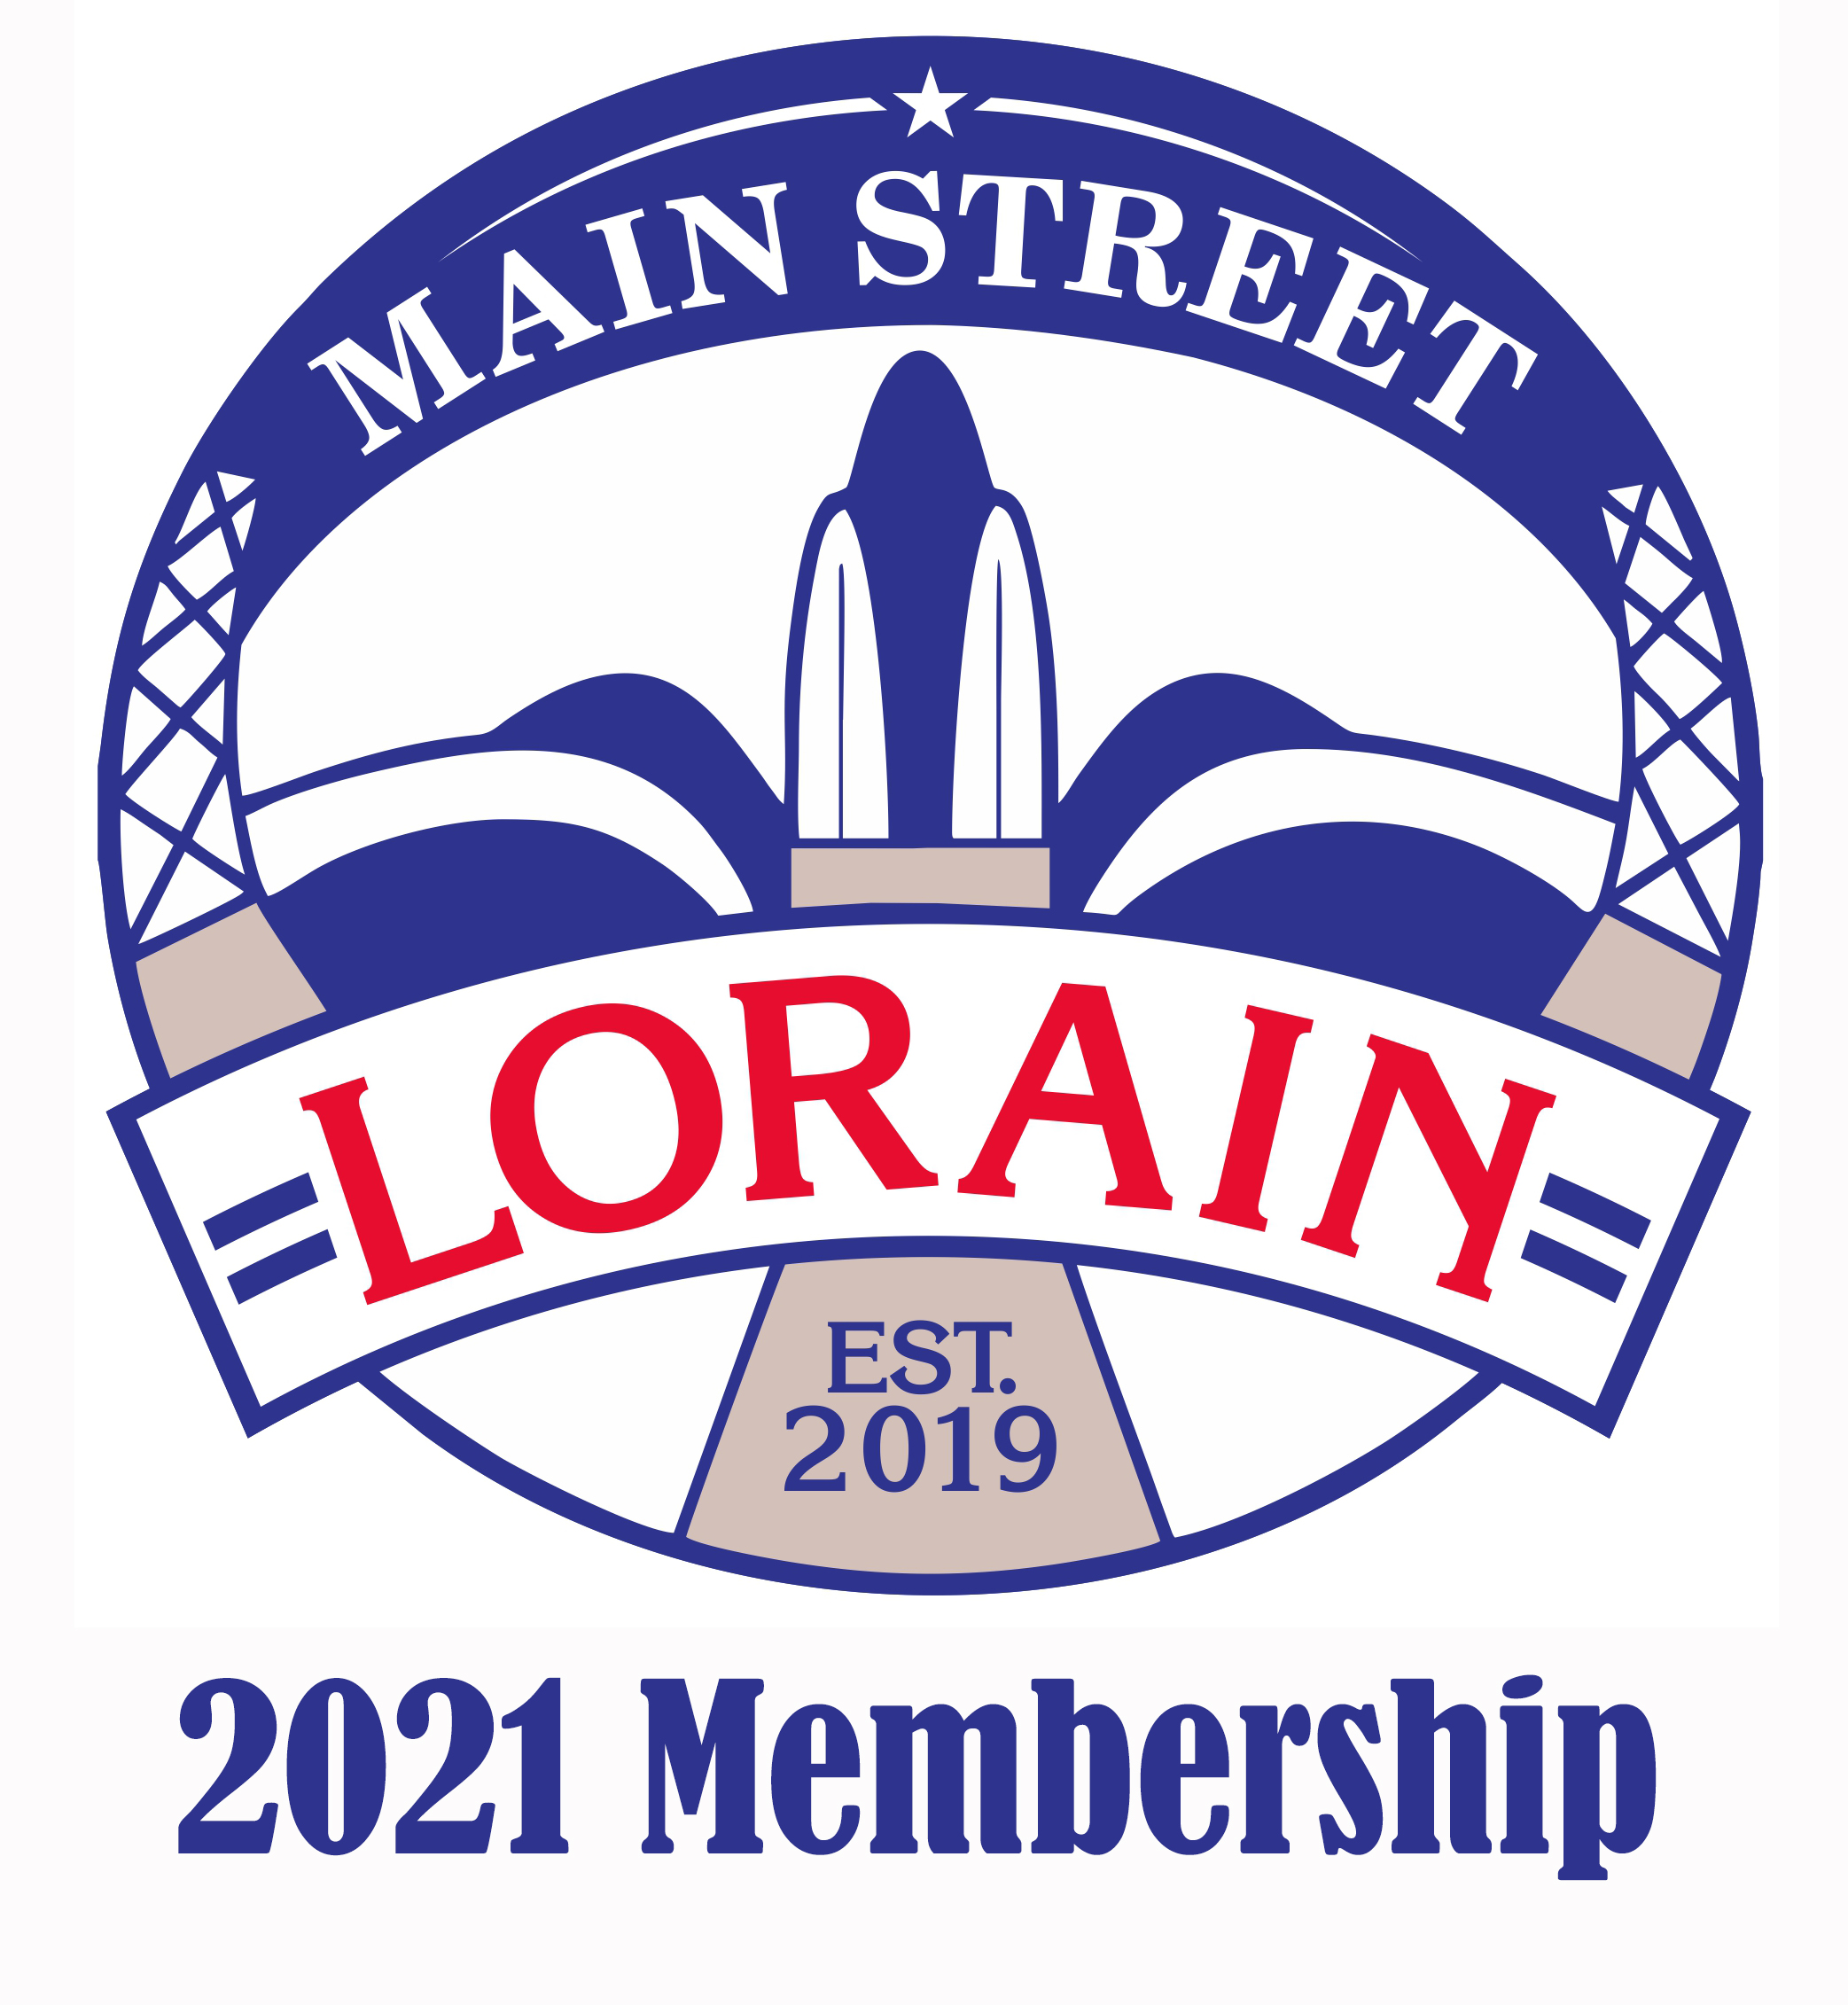 2021 Membership Drive